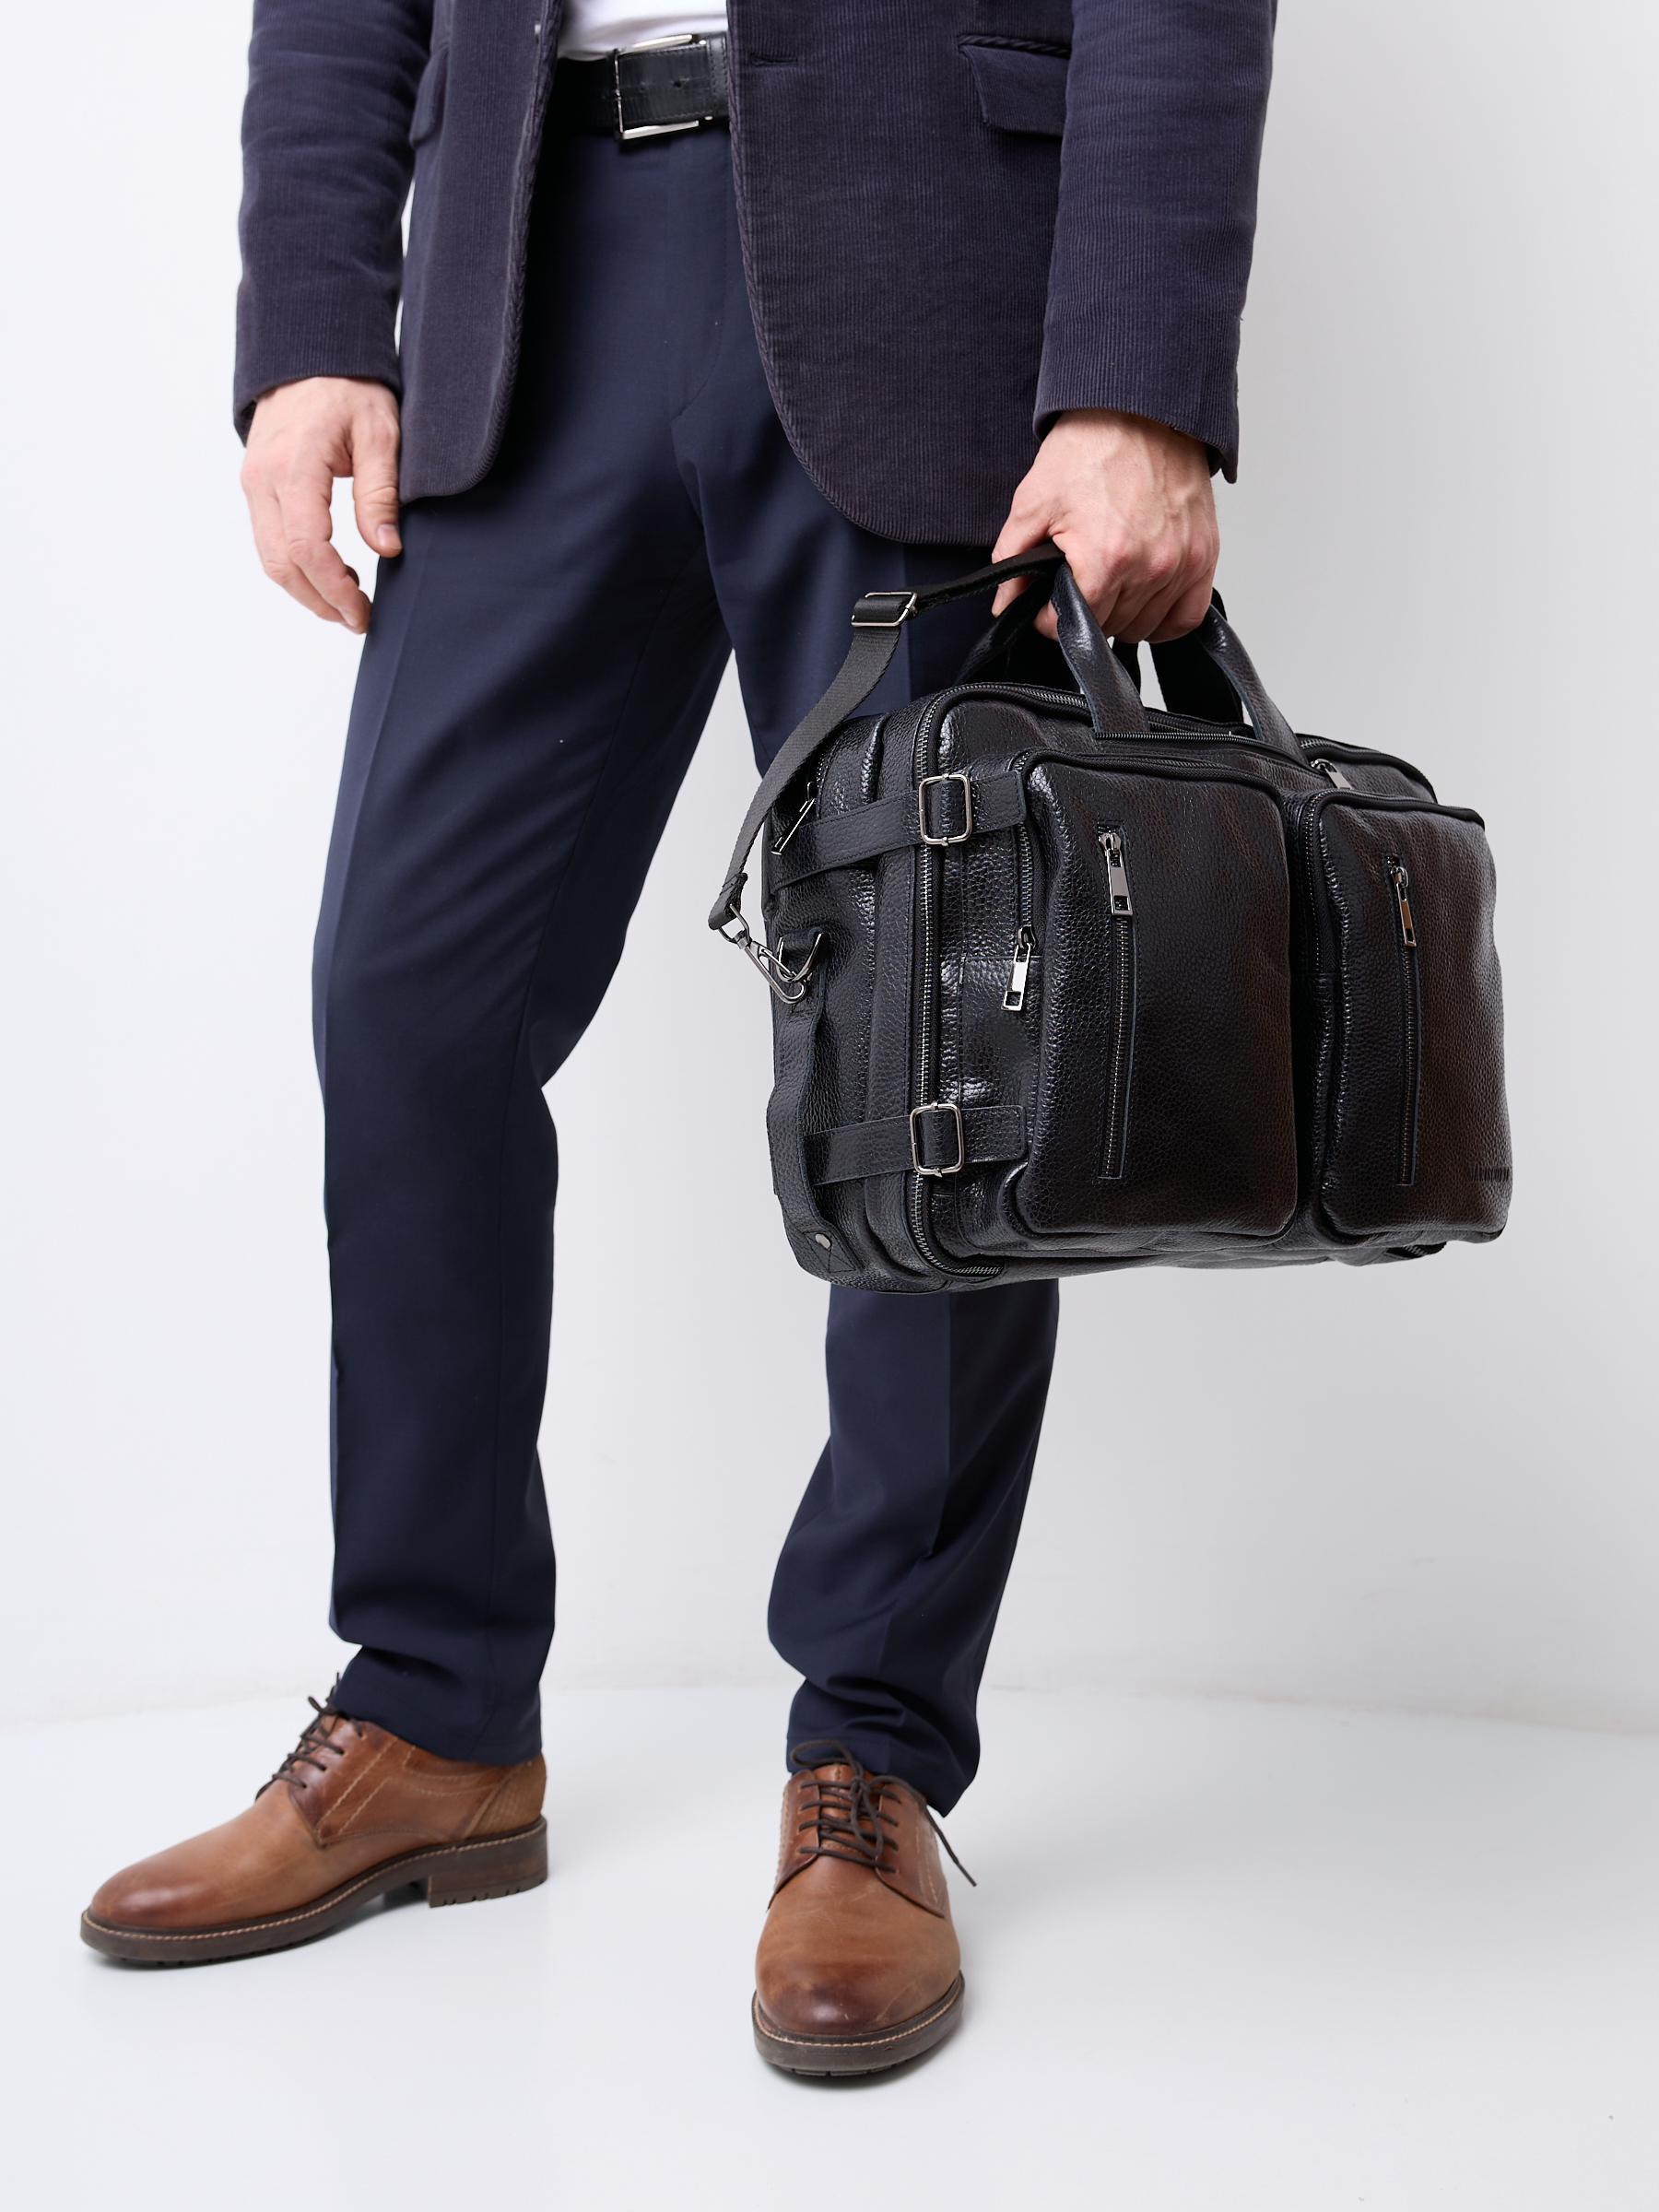 Сумка-рюкзак мужской Franchesco Mariscotti 2-782к black/вороново крыло, 39х26х18 см